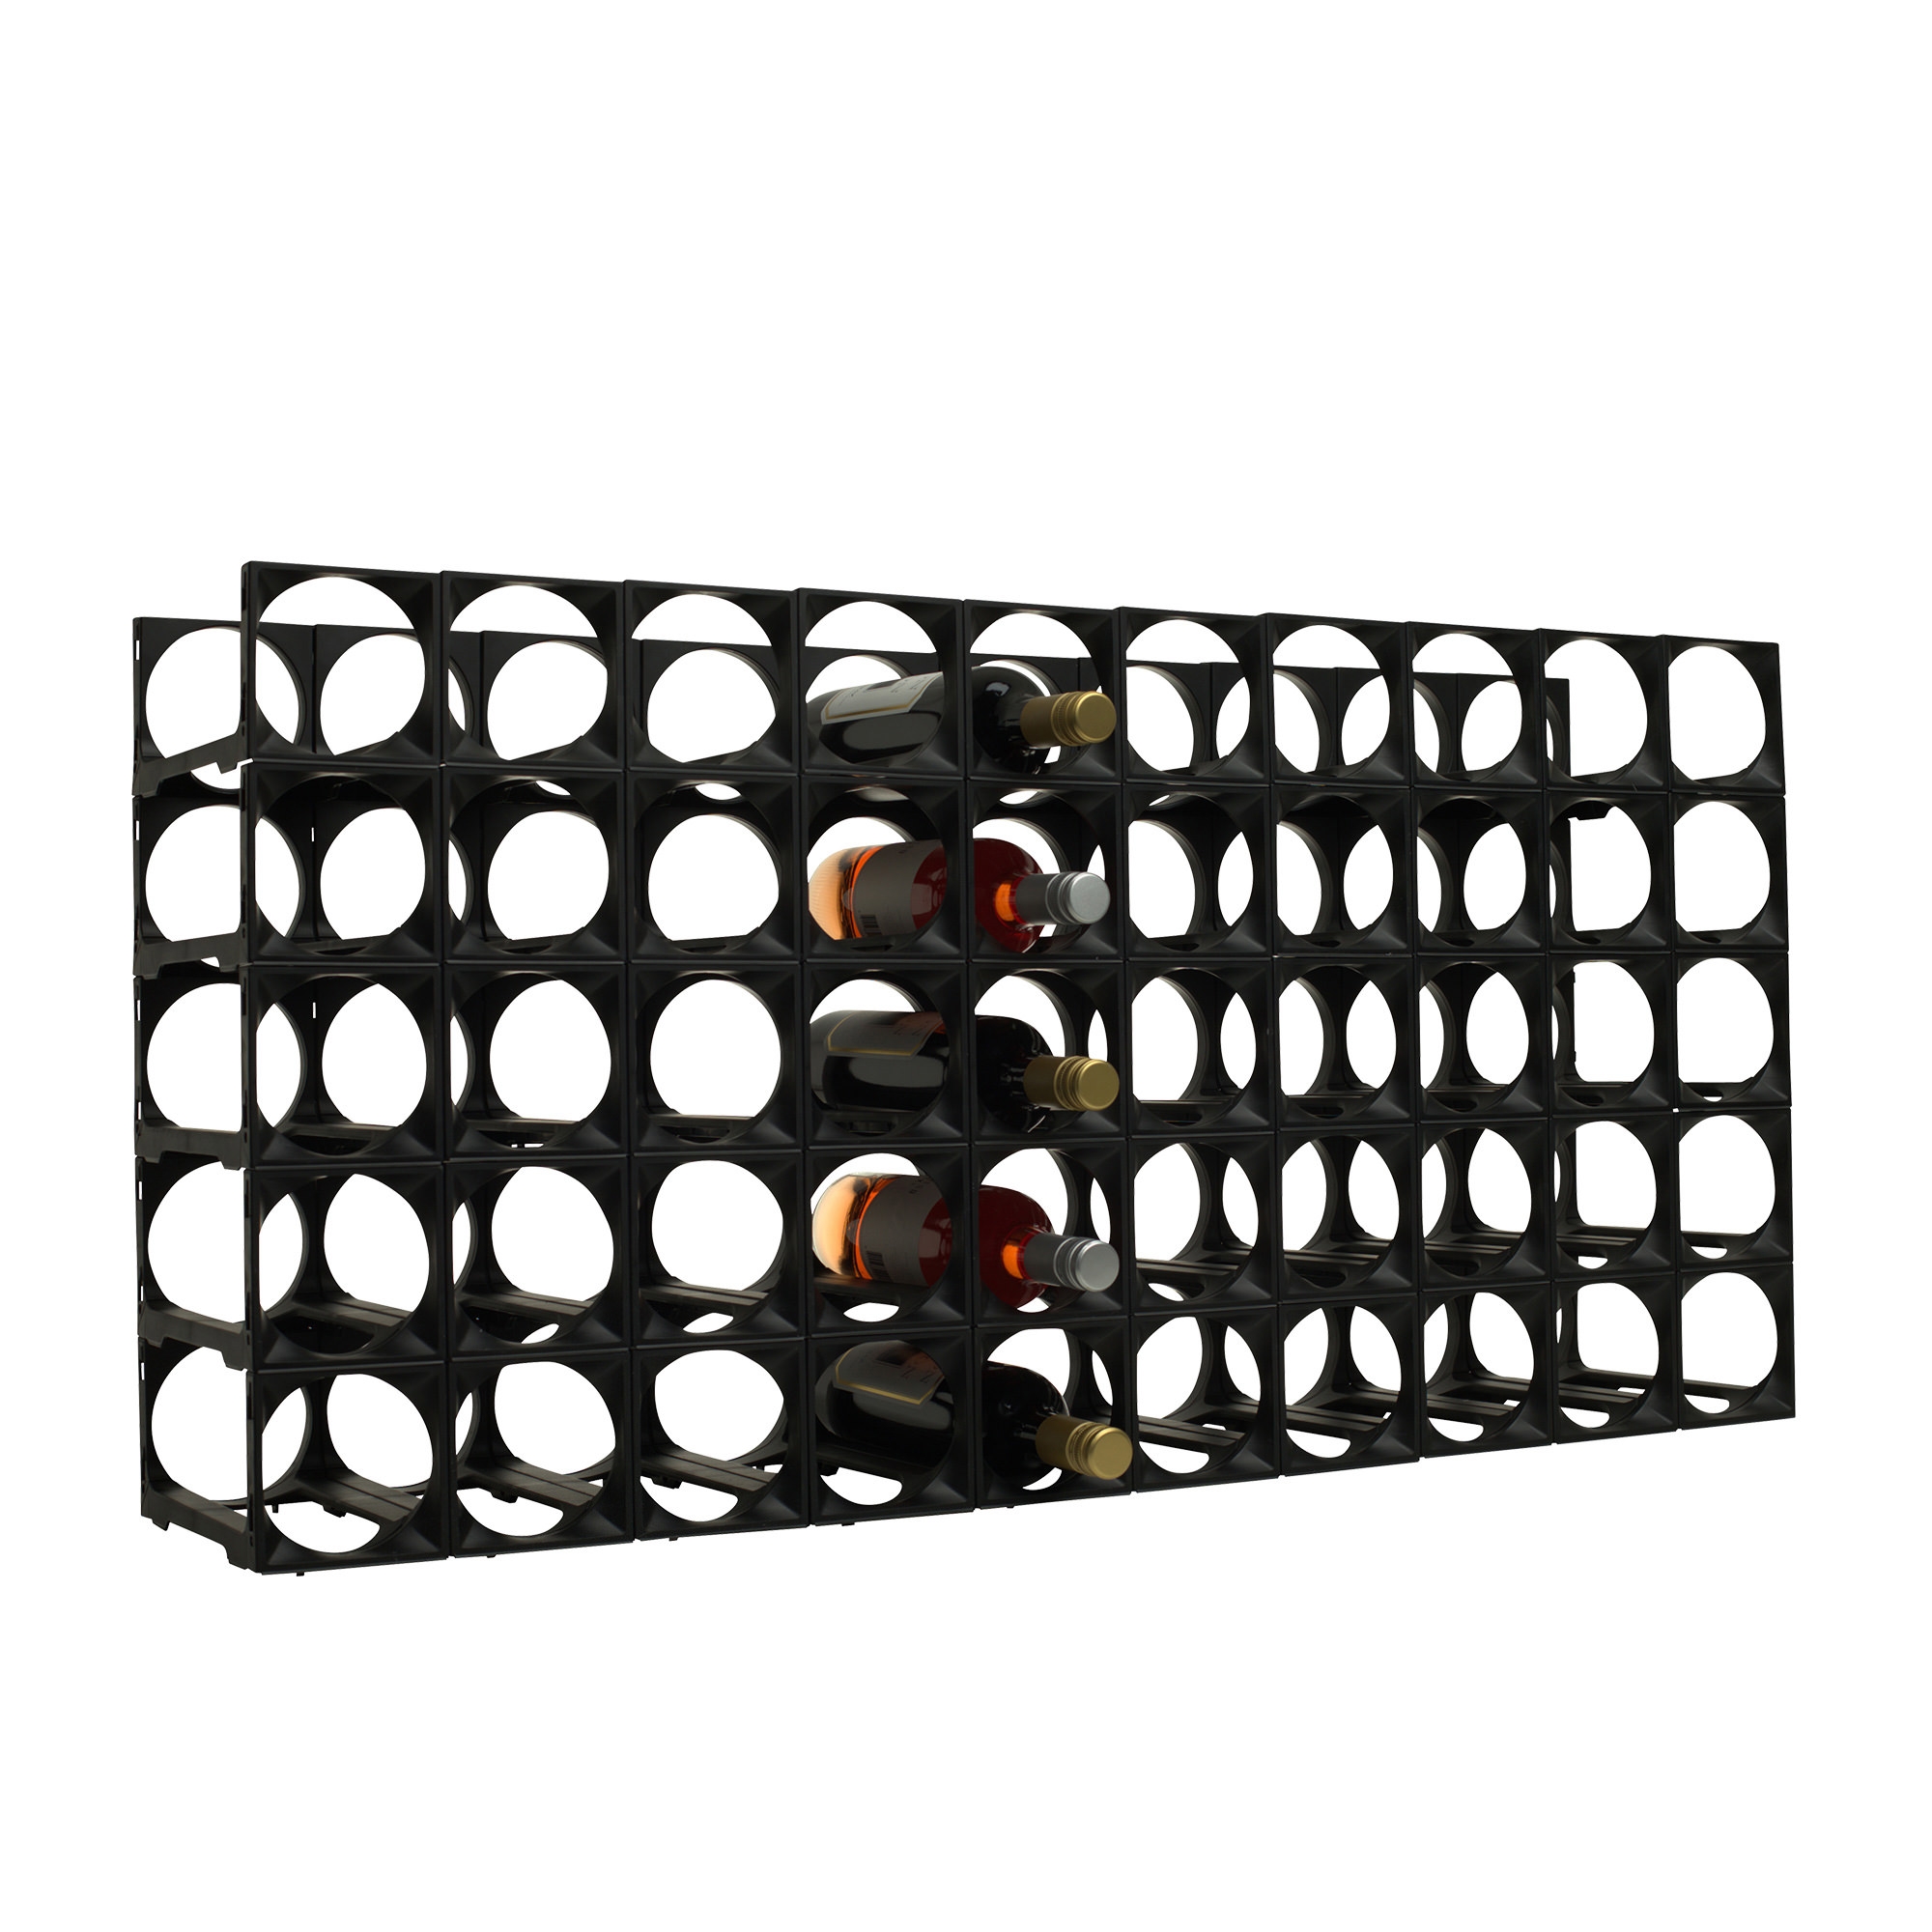 Stakrax Modular Wine Storage Kit 50 Bottle Black Image 2